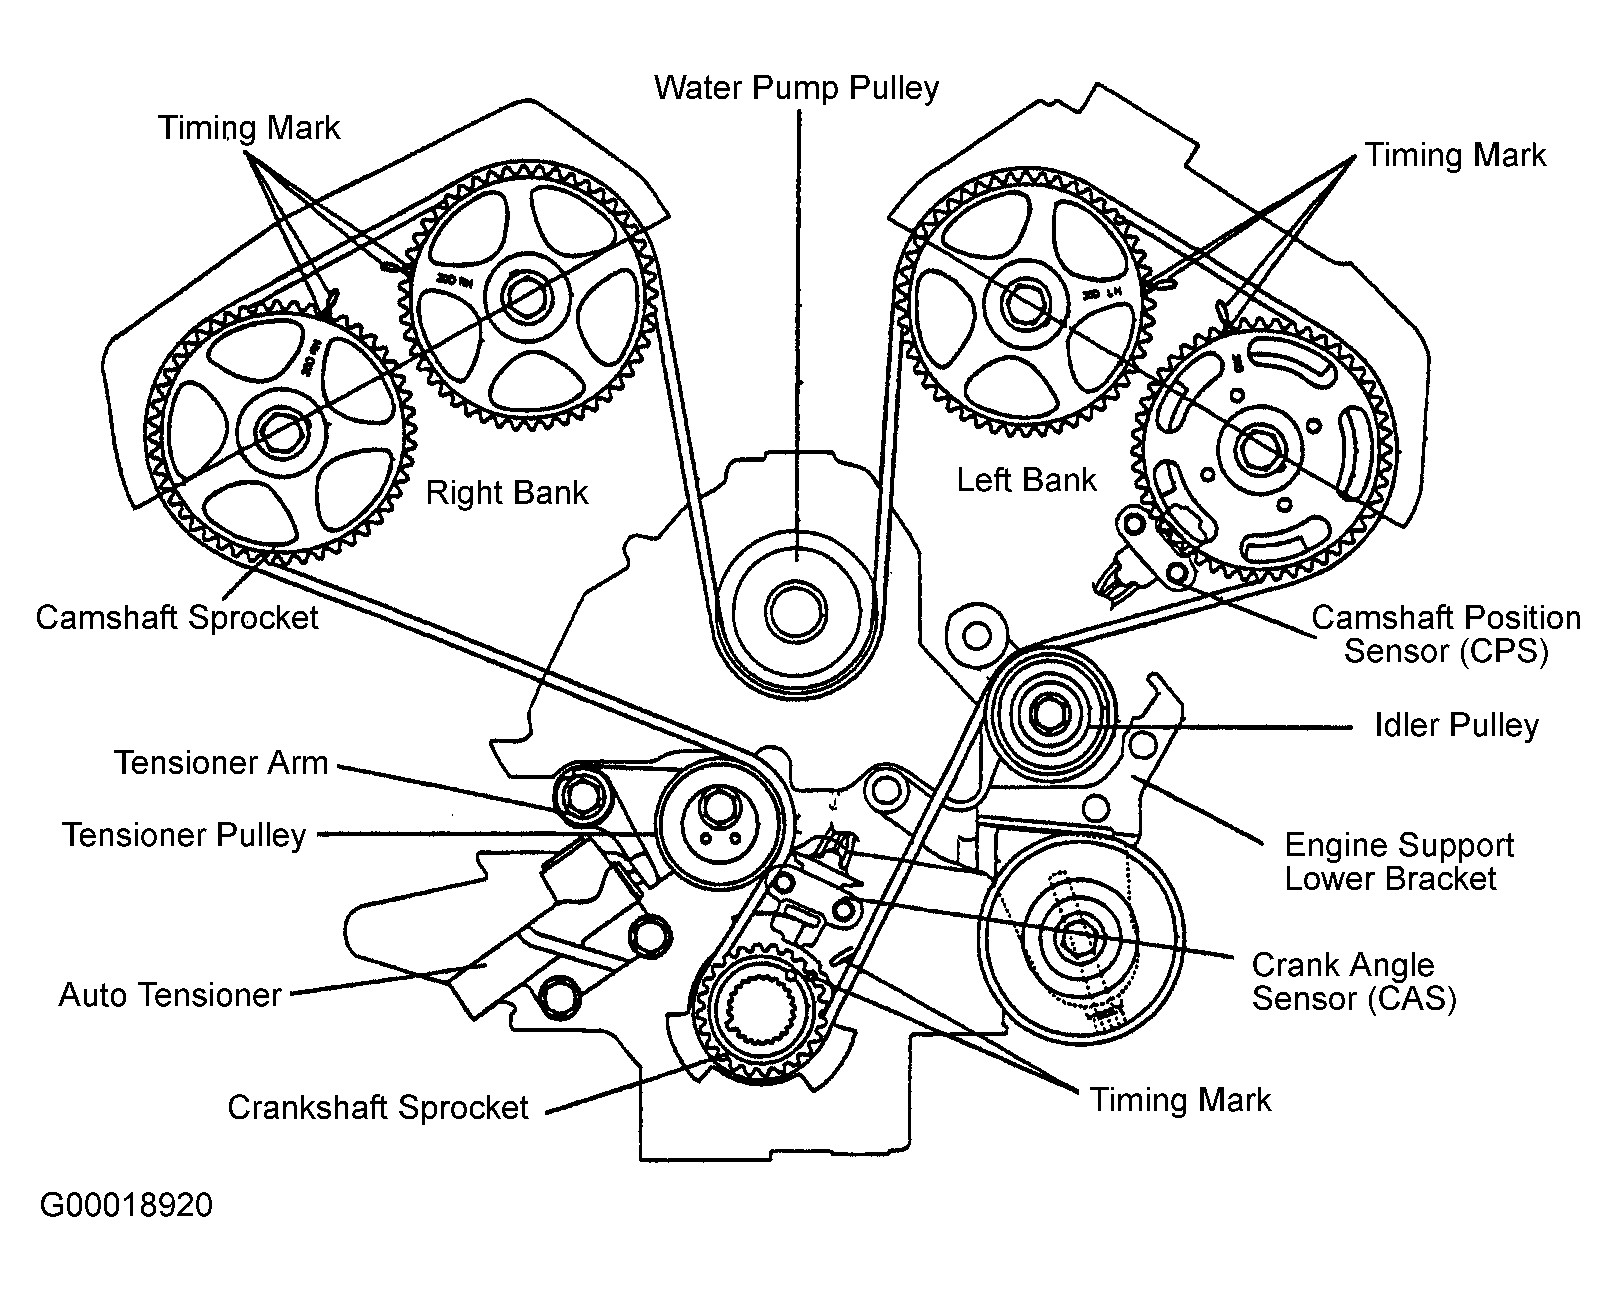 2004 Kia sorento Engine Diagram 2004 Kia sorento Serpentine Belt Routing and Timing Belt Diagrams Of 2004 Kia sorento Engine Diagram